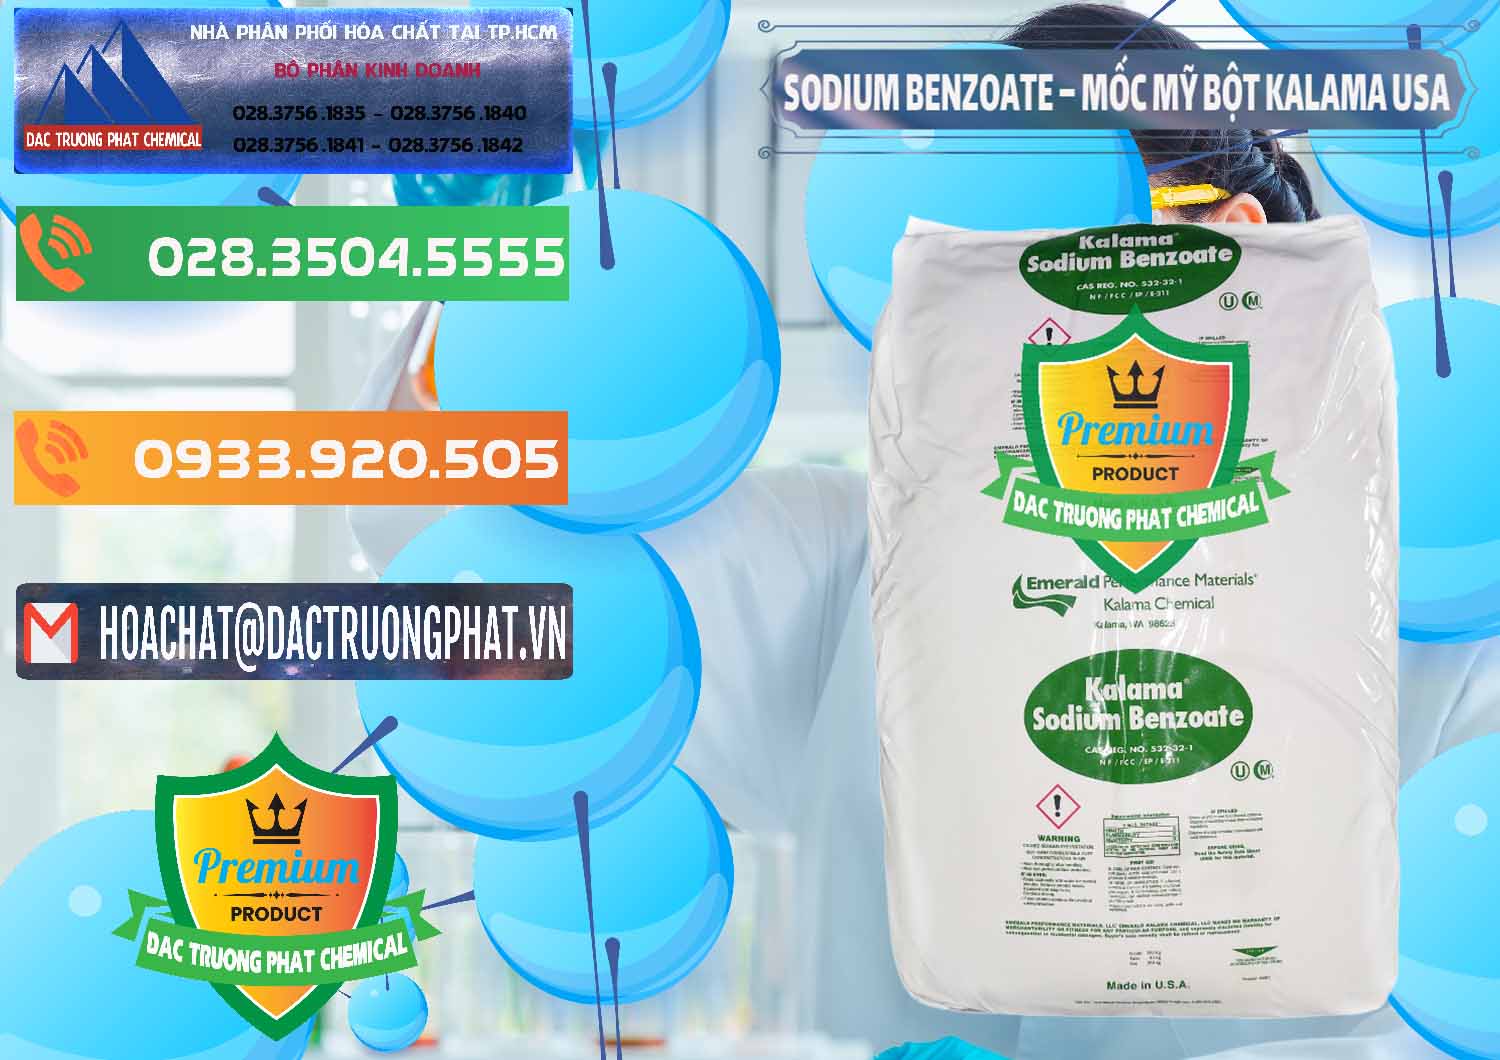 Cty kinh doanh và bán Sodium Benzoate - Mốc Bột Kalama Food Grade Mỹ Usa - 0136 - Nơi nhập khẩu & phân phối hóa chất tại TP.HCM - hoachatxulynuoc.com.vn